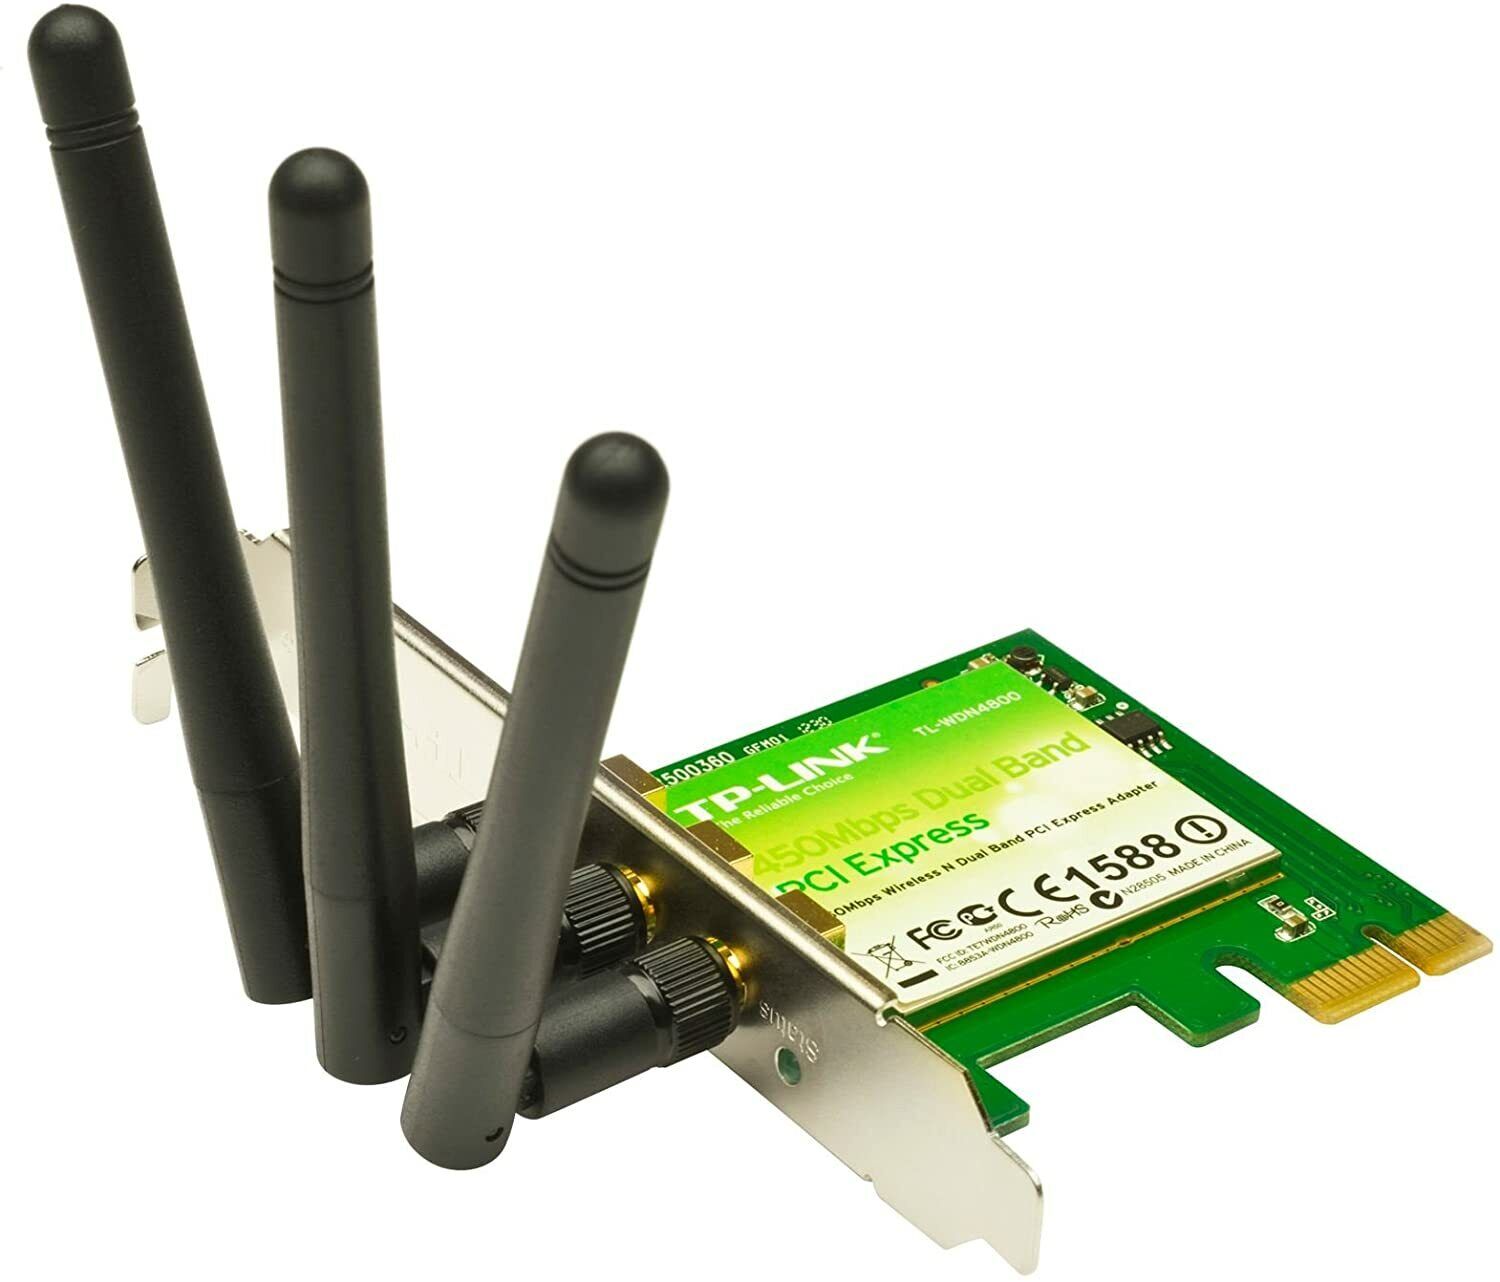 TL-WDN4800 N900 Wireless Dual Band PCI A Boxed Set 845973050603 N/A TP-ALINK@A10